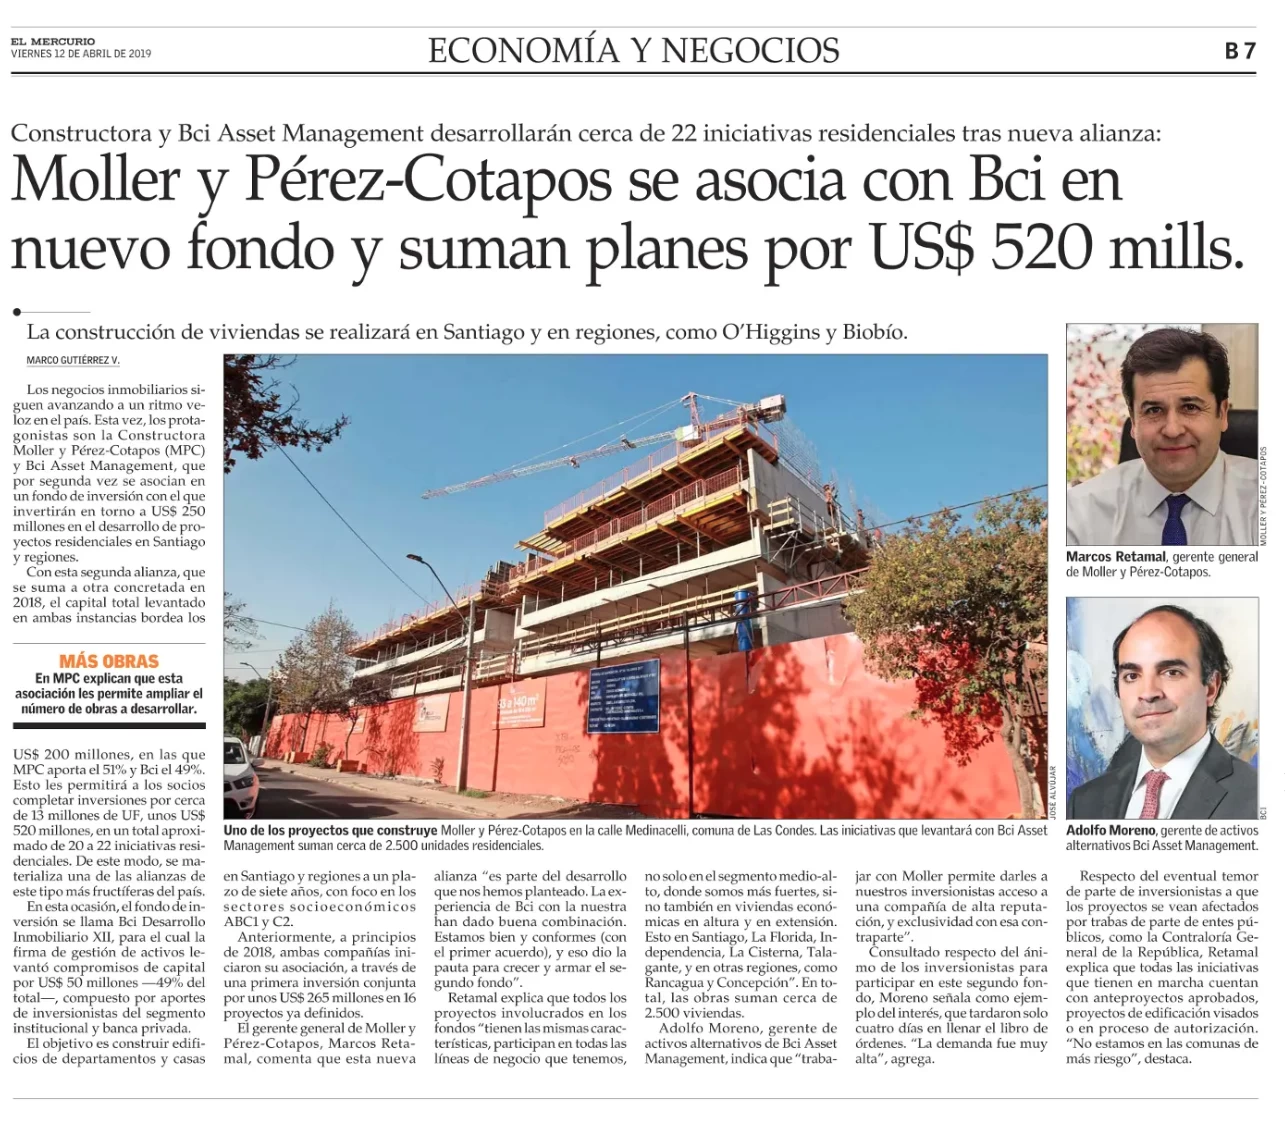 Moller y Pérez-Cotapos se asocia con Bci en nuevo fondo y suman planes por US$ 520 mills.